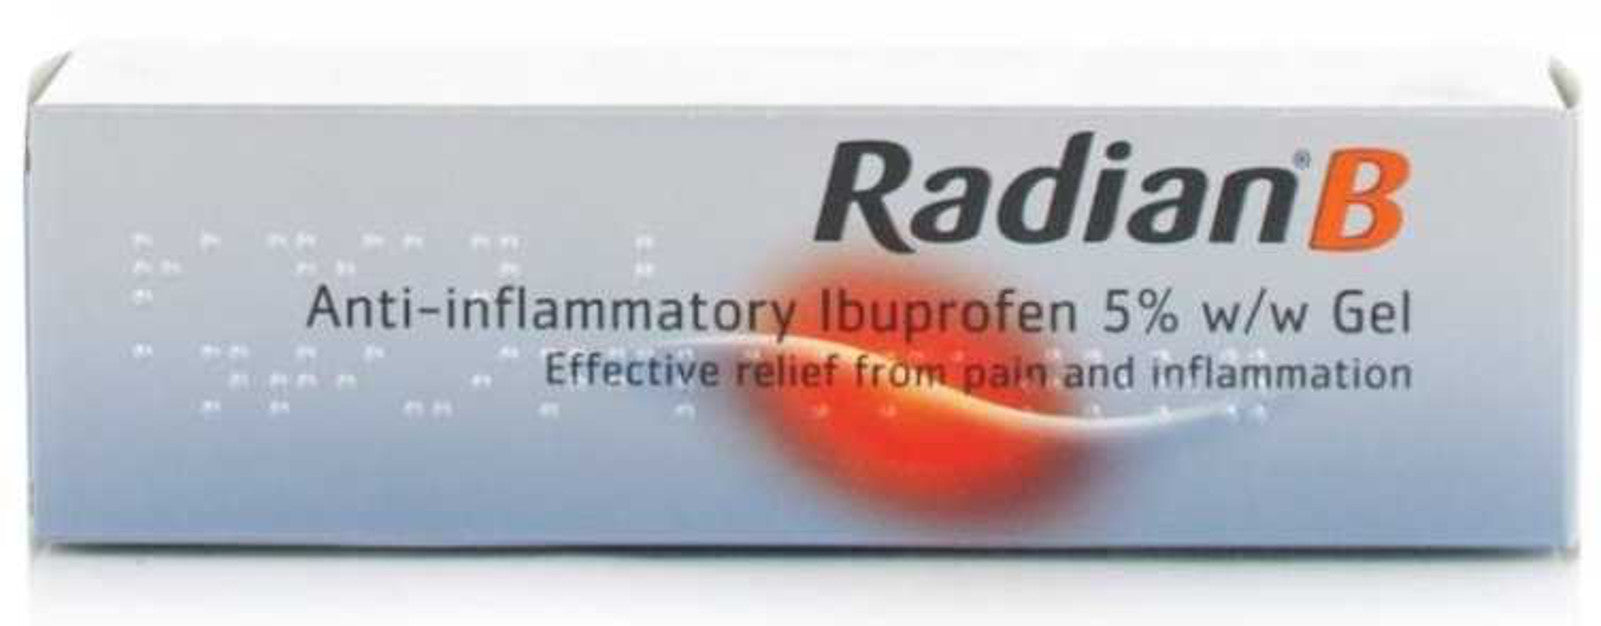 Radian B Ibuprofen 5% Gel – 30g